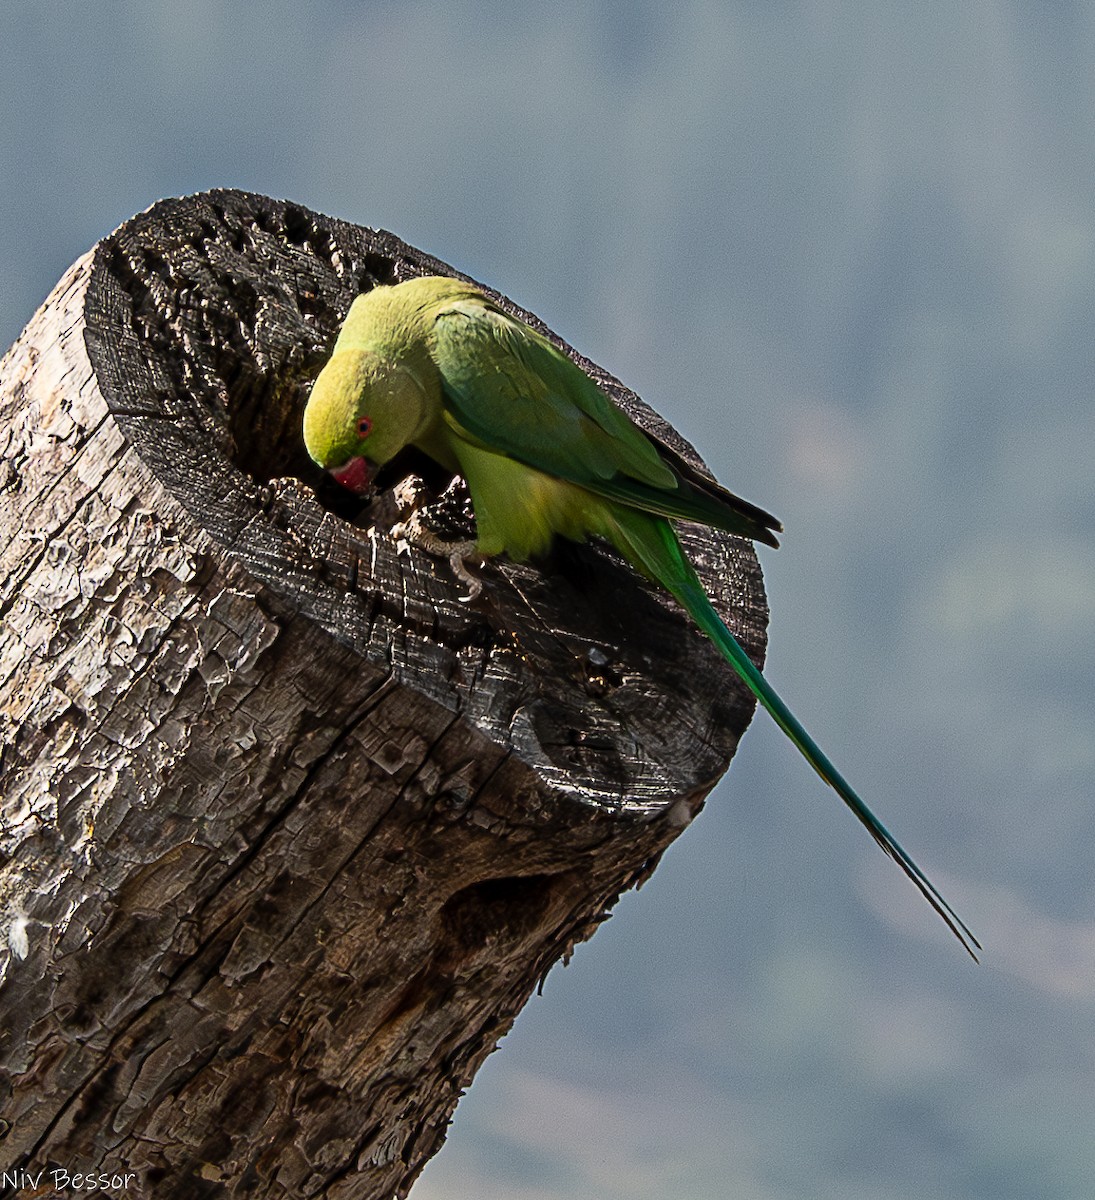 Rose-ringed Parakeet - Niv Bessor